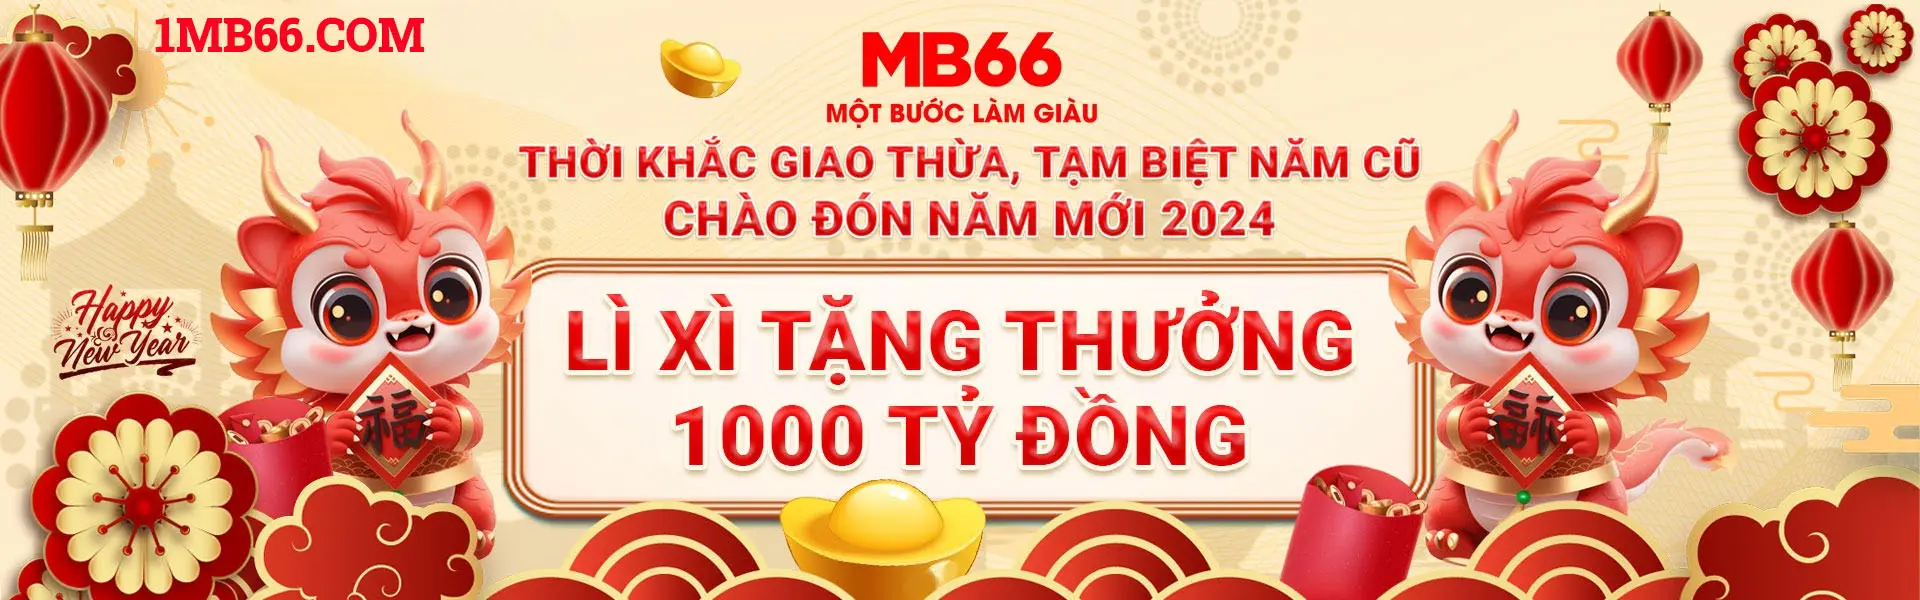 mb66-li-xi-tang-thuong-1000-ty-dong